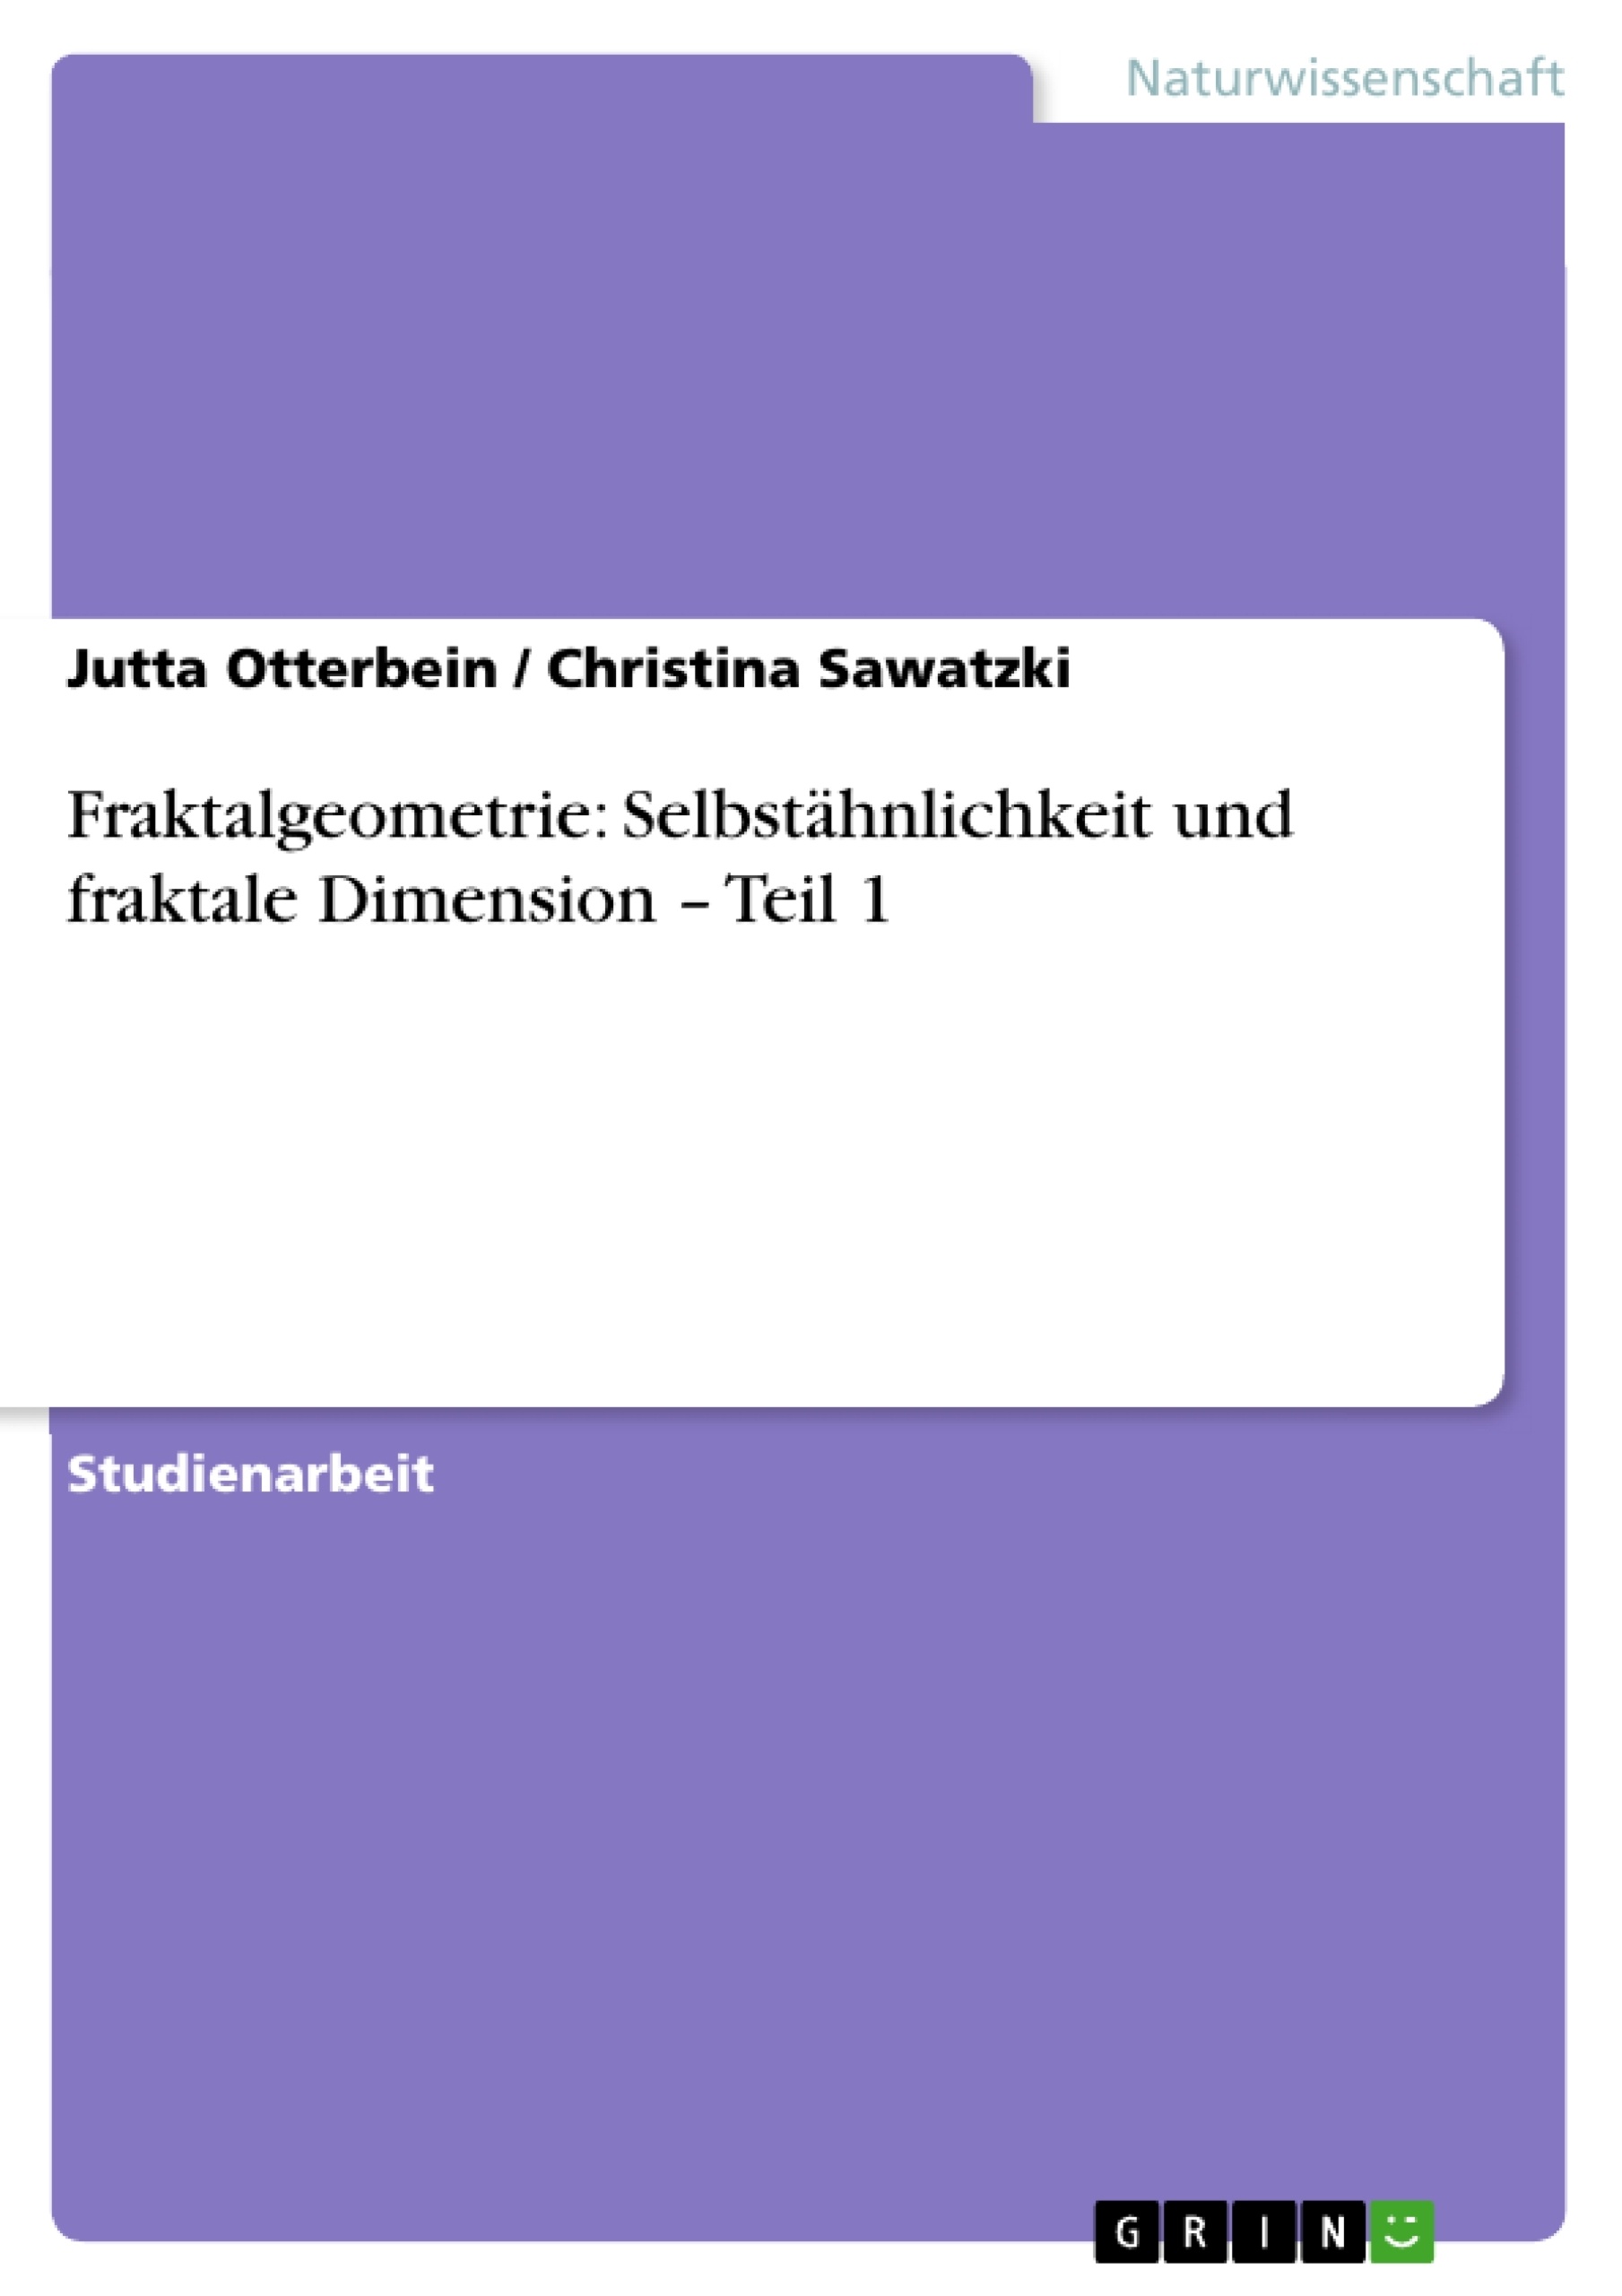 Title: Fraktalgeometrie: Selbstähnlichkeit und fraktale Dimension – Teil 1